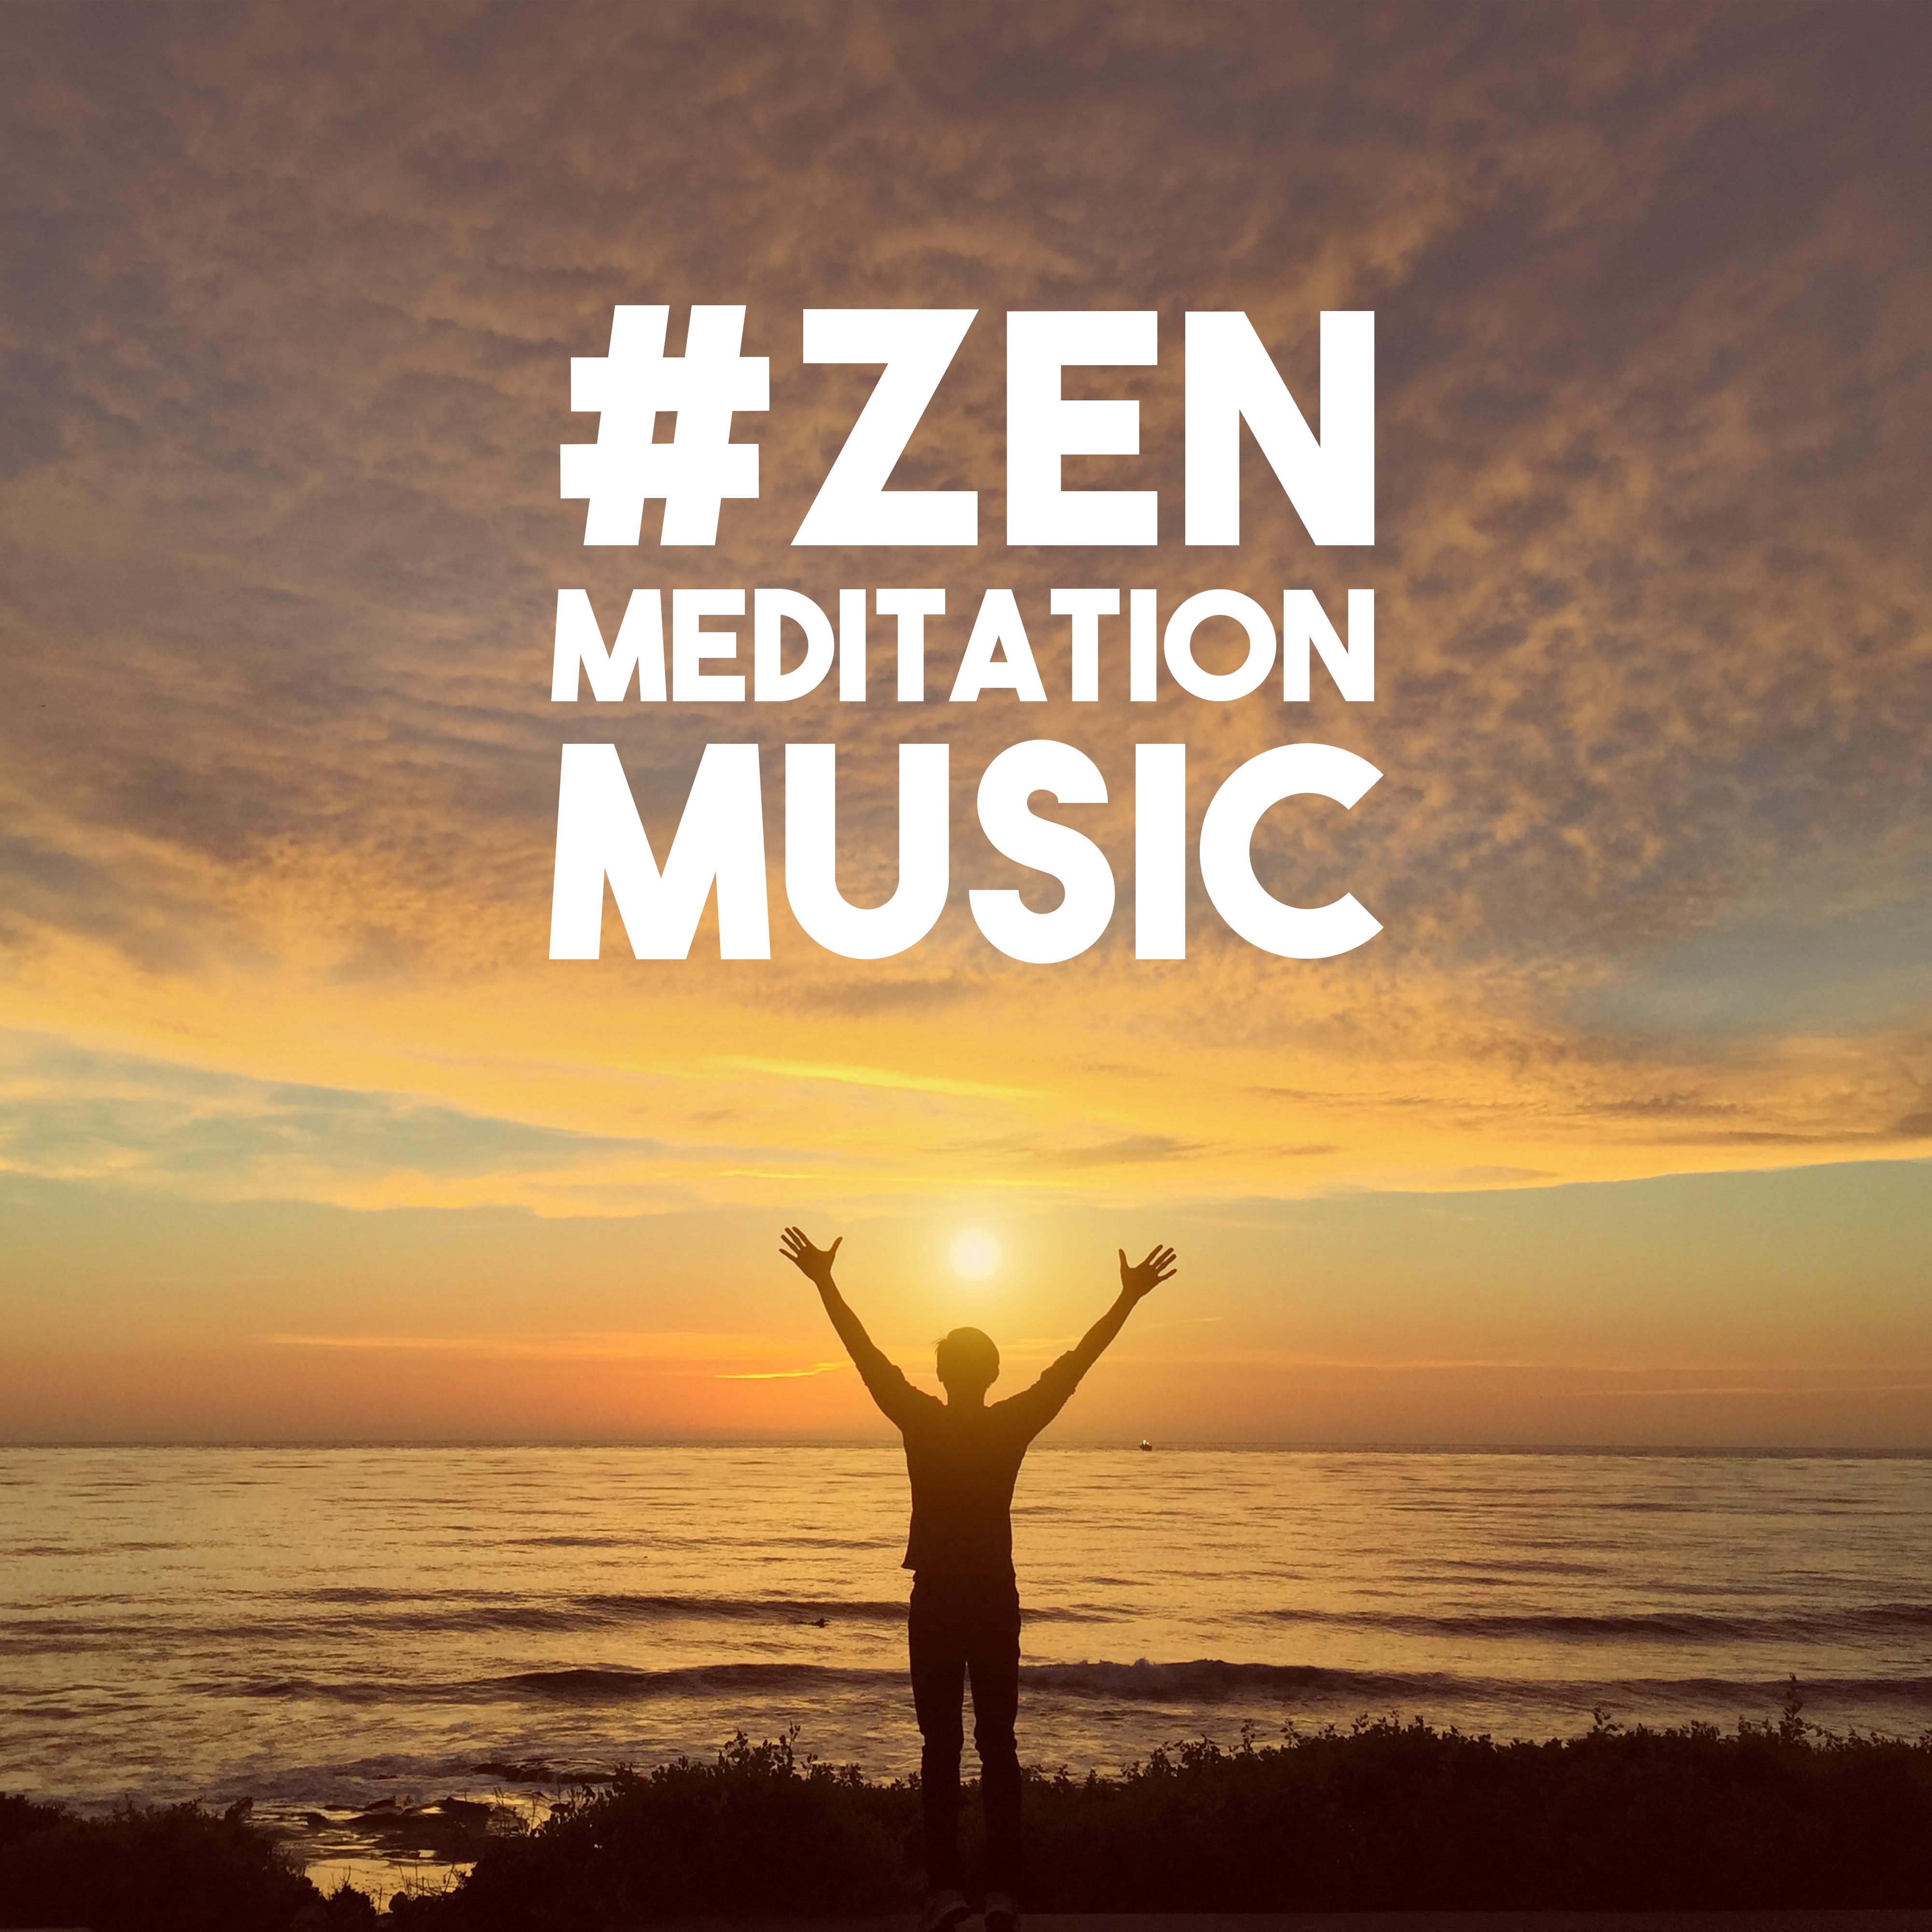 #ZEN Meditation MUSIC – Relaxing Music Therapy, Nature Sounds, Chakra Balancing, Yoga Music, Buddha Meditation Sounds, Training Yoga